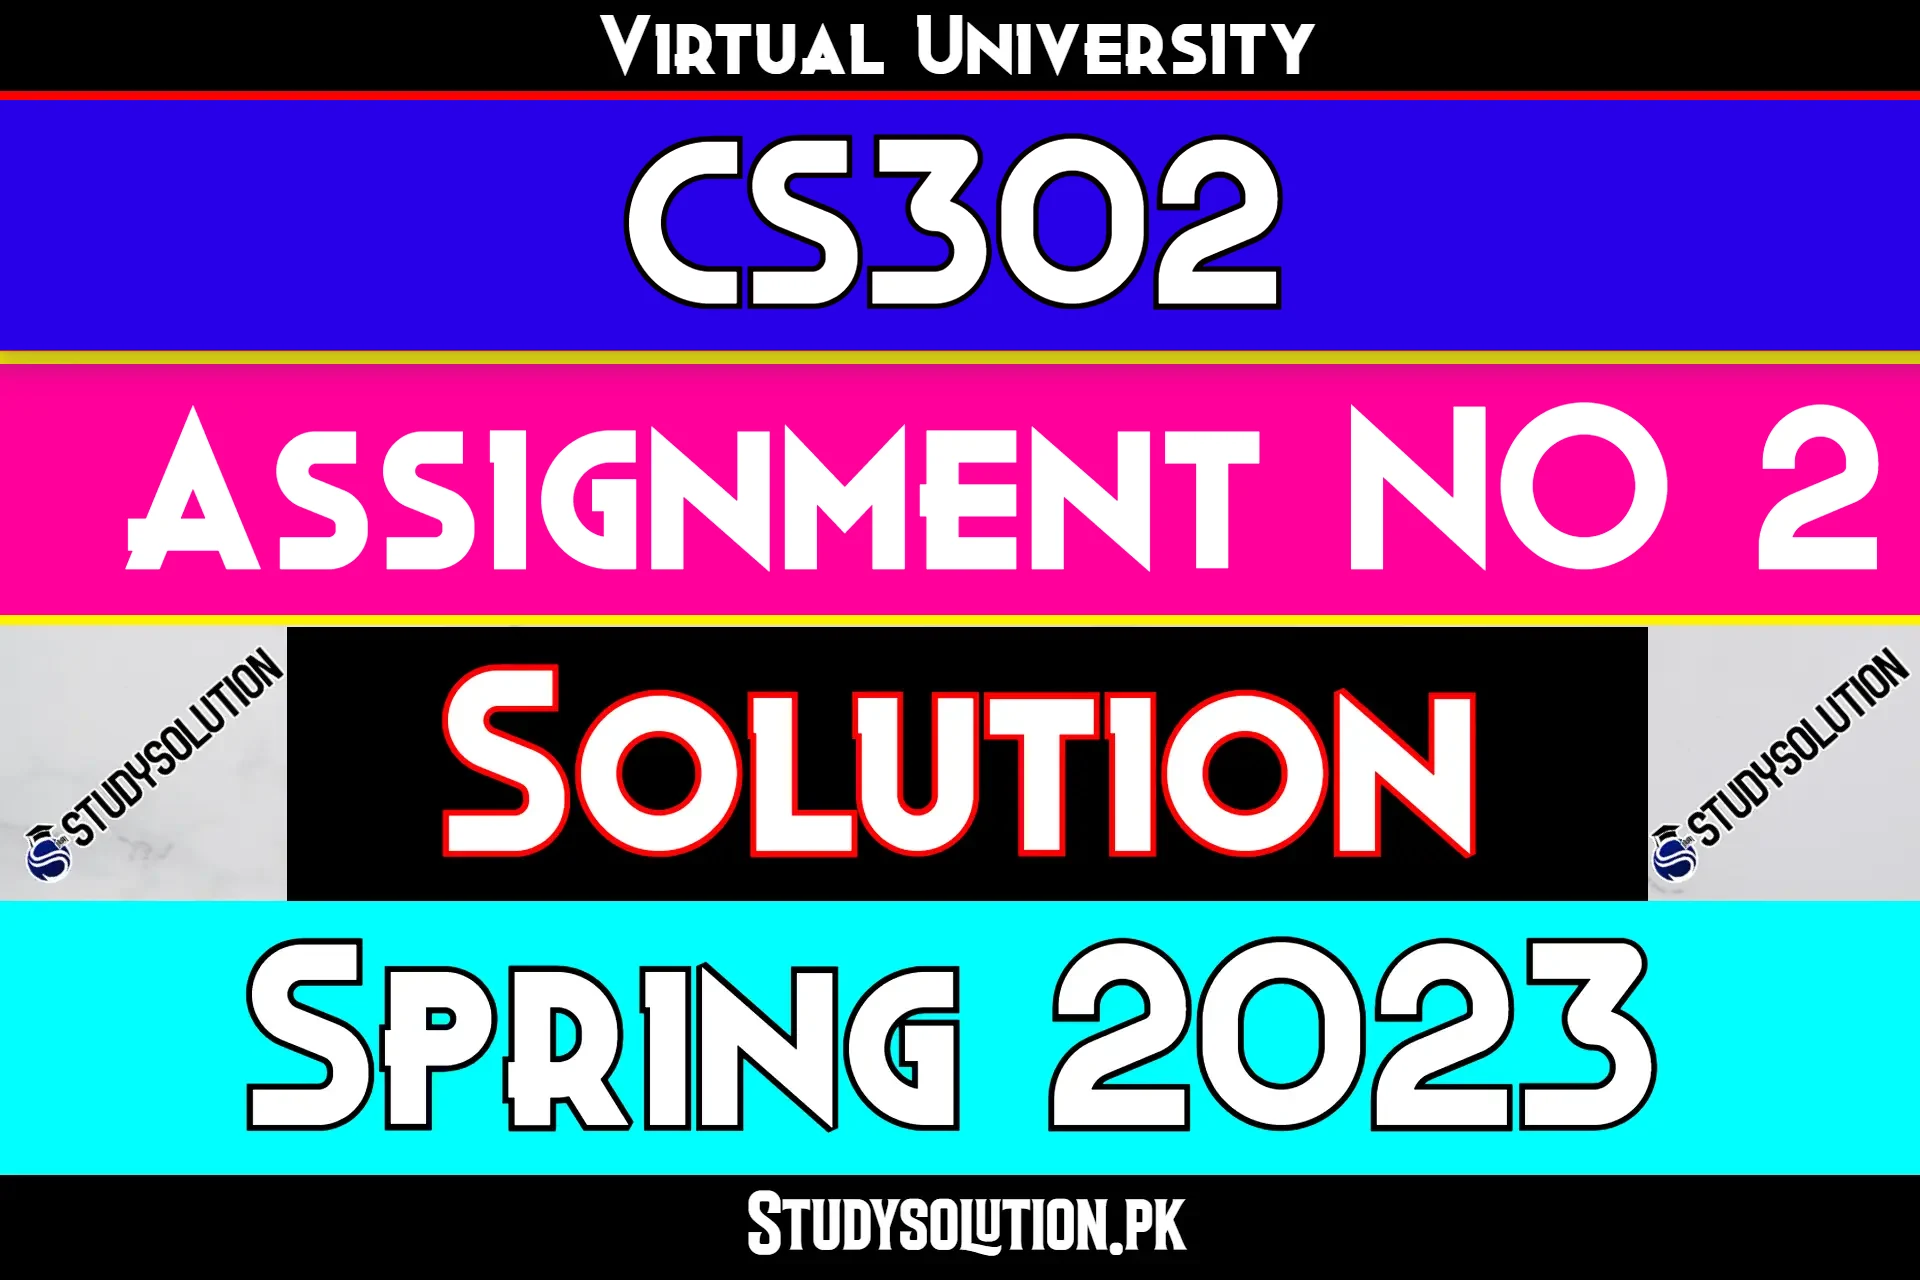 CS302 Assignment No 2 Solution Spring 2023